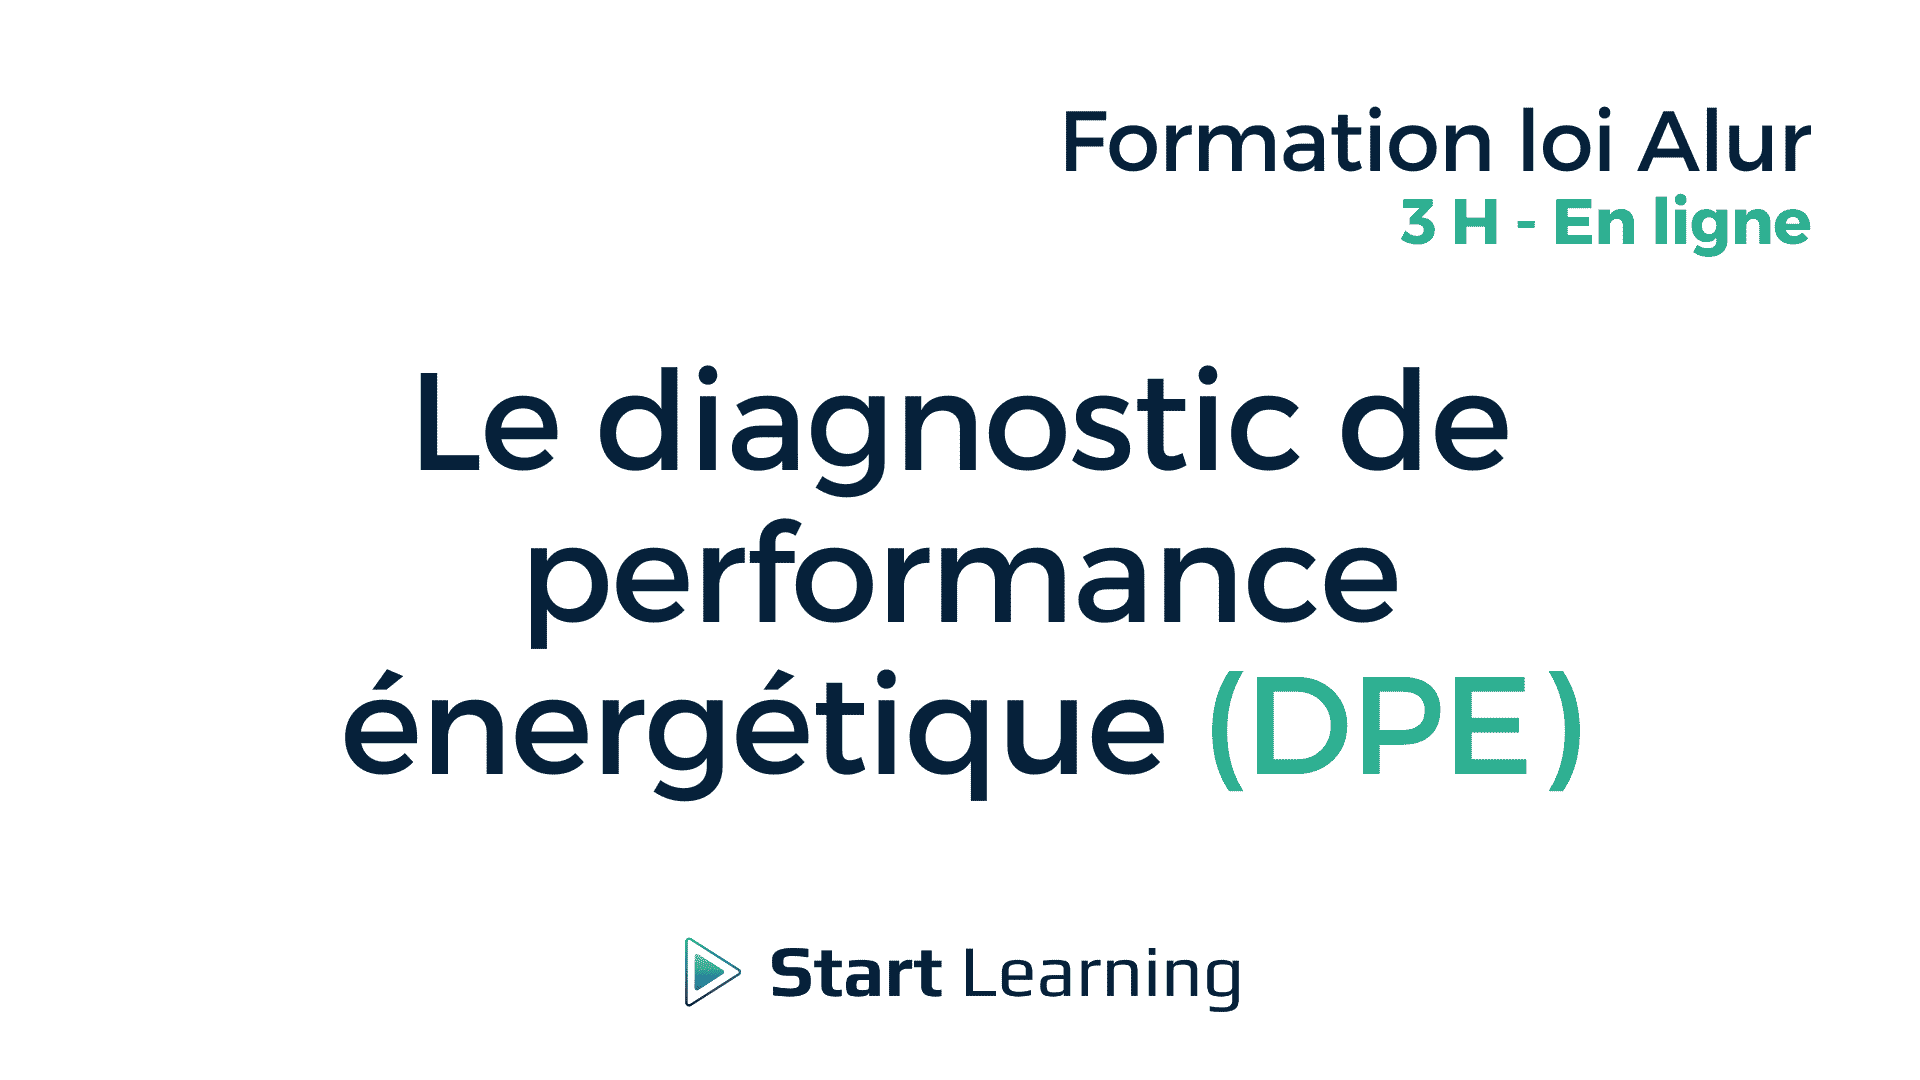 Le diagnostic de performance énergétique (DPE) - 3H - en ligne